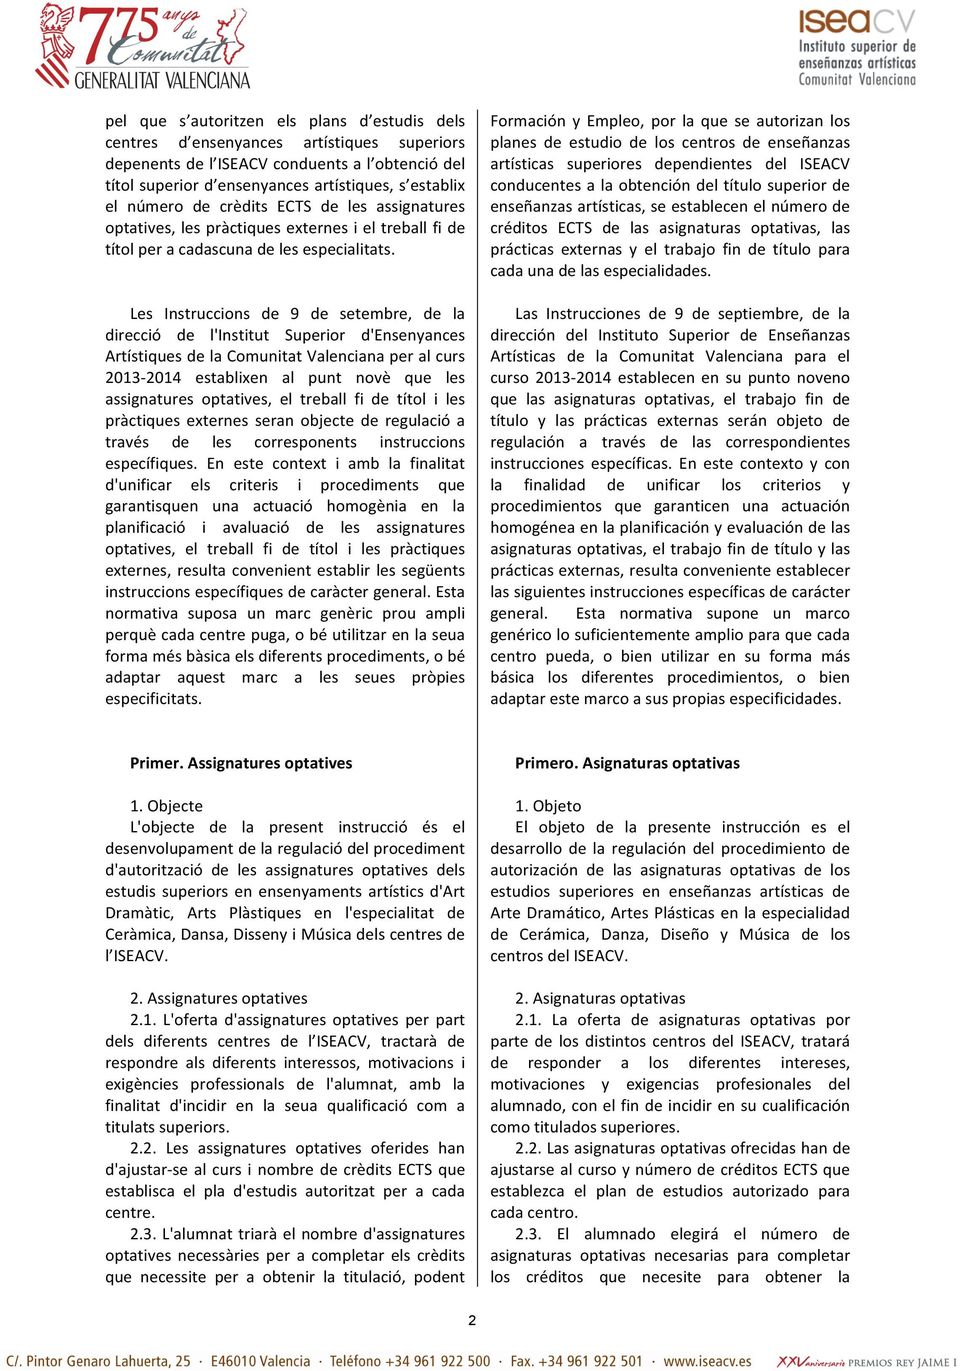 Les Instruccions de 9 de setembre, de la direcció de l'institut Superior d'ensenyances Artístiques de la Comunitat Valenciana per al curs 2013-2014 establixen al punt novè que les assignatures